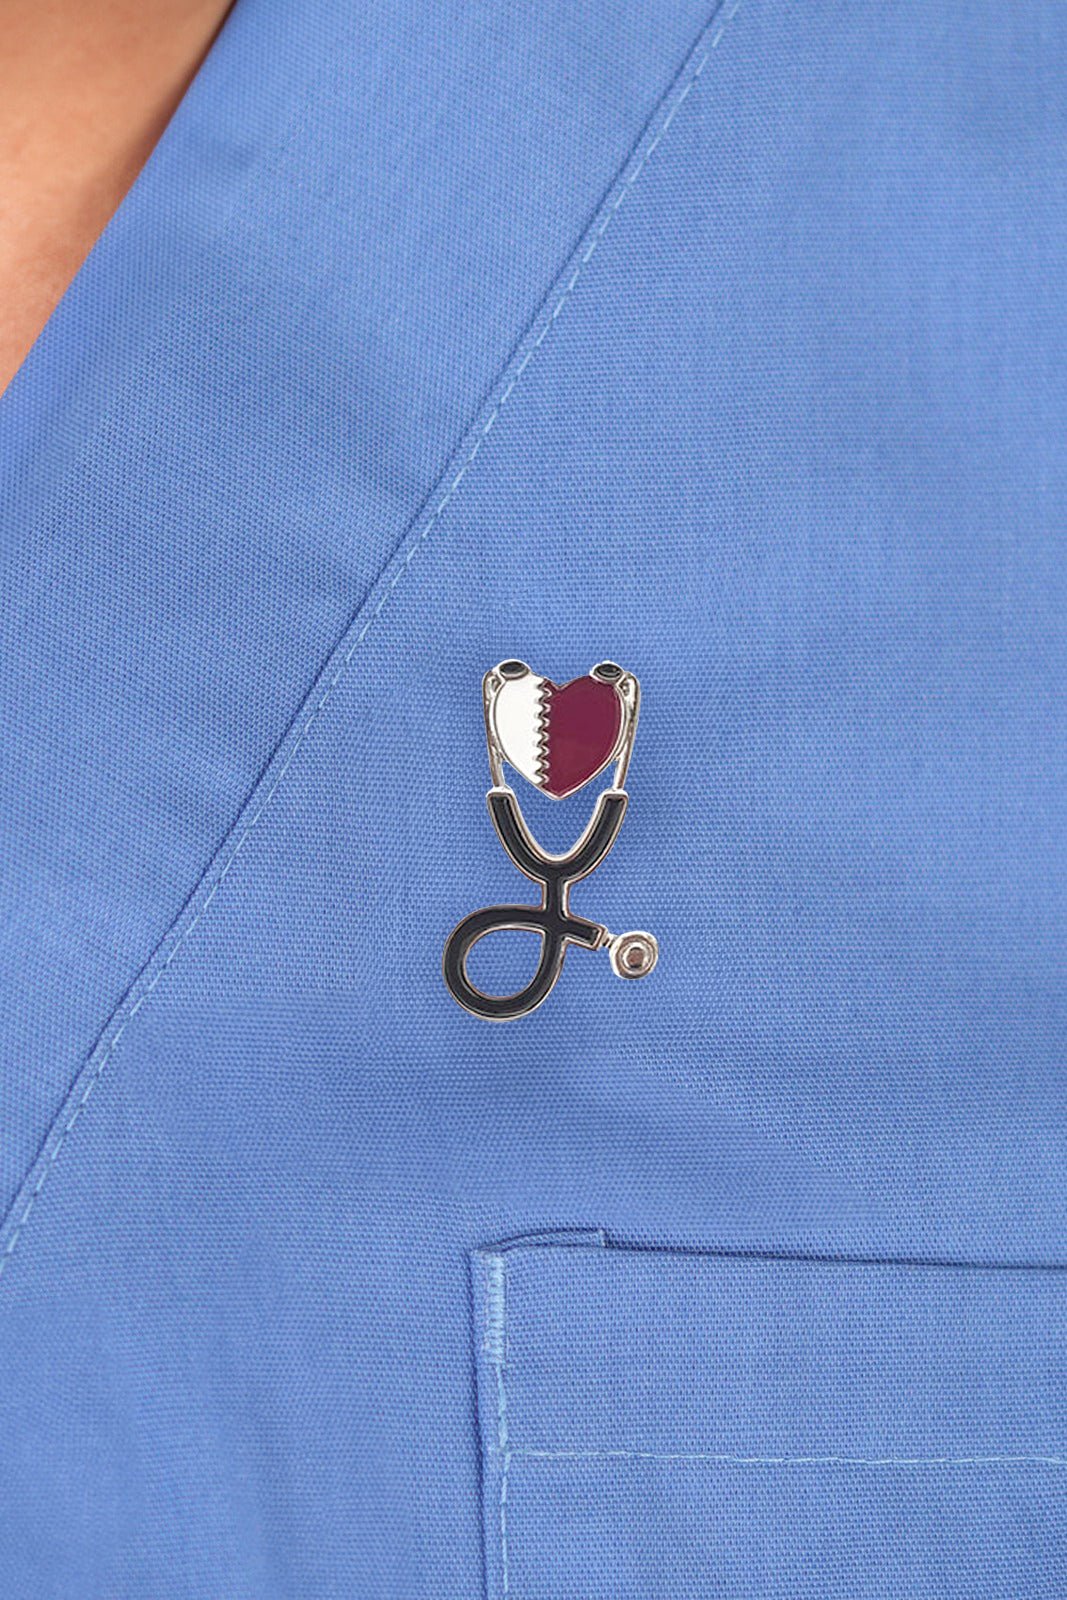 Qatar Flag Pin